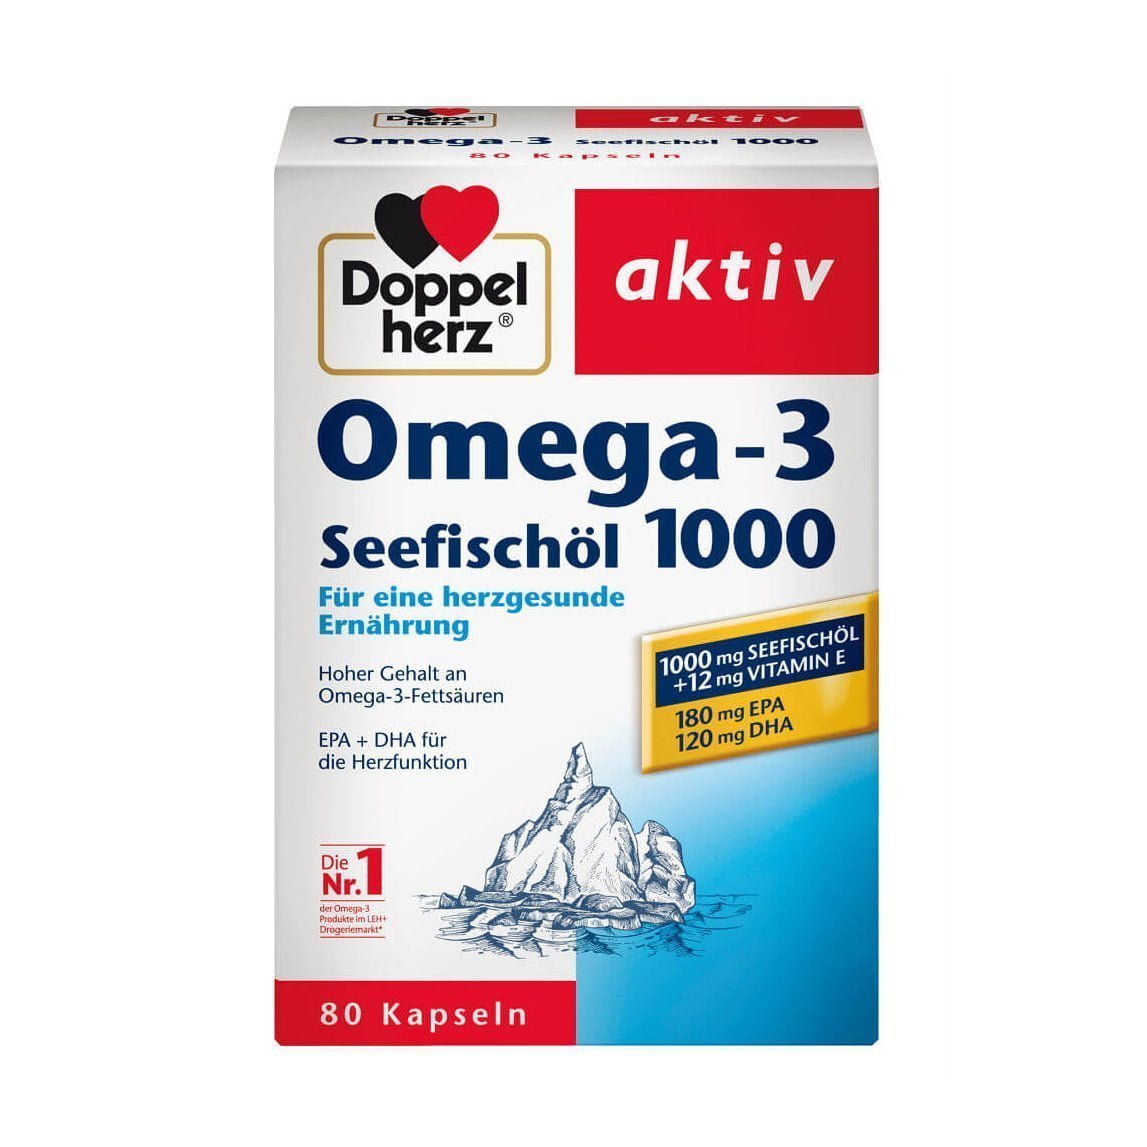 Doppelherz Omega 3 Seefischol 1000 ikute.vn